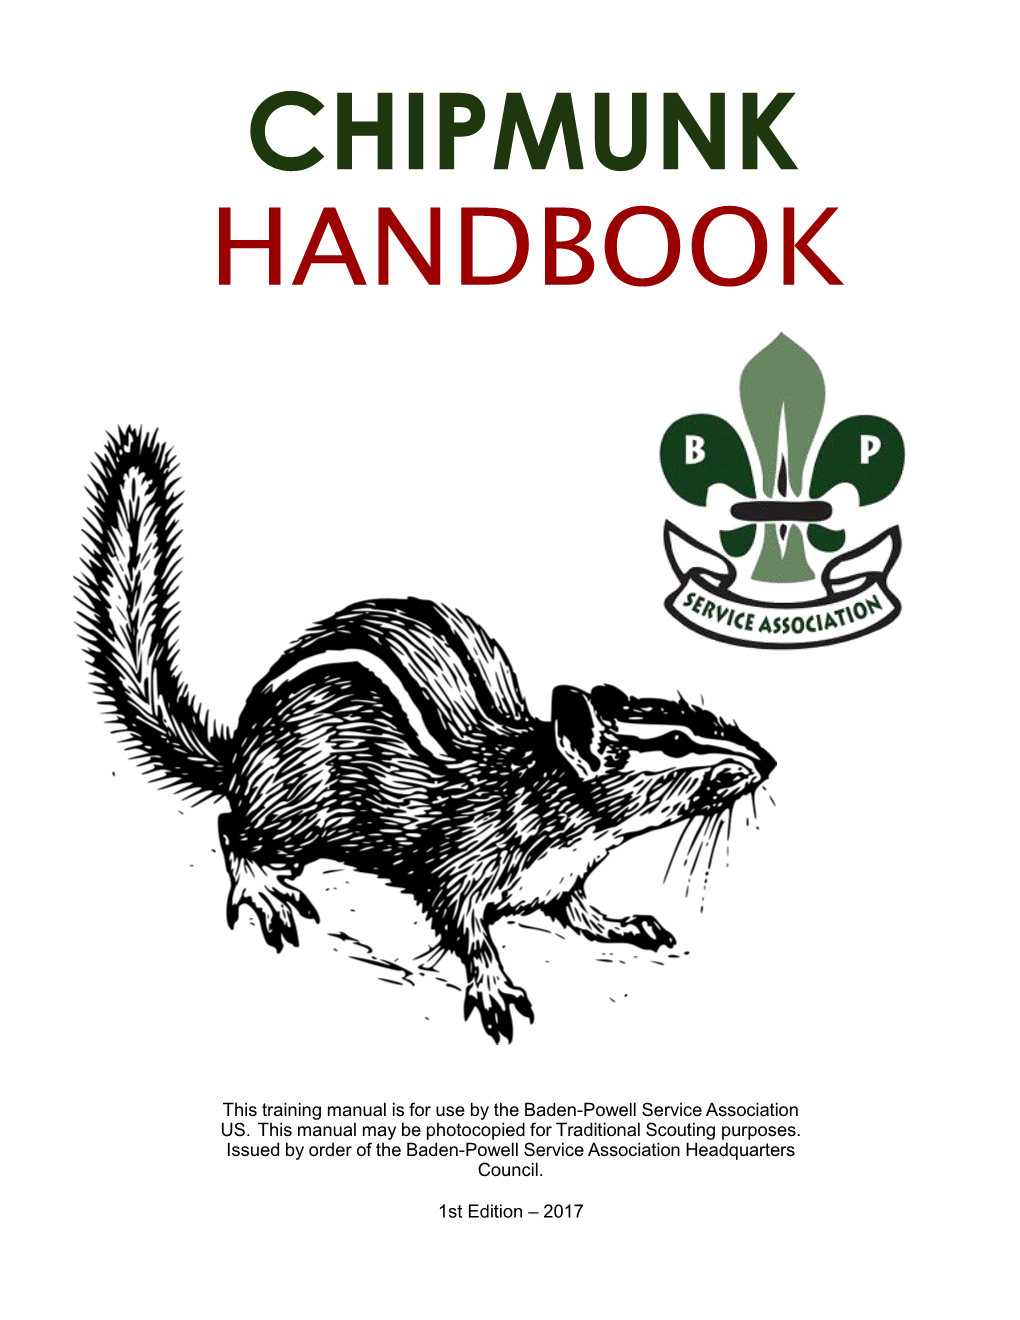 BPSA Chipmunk Handbook